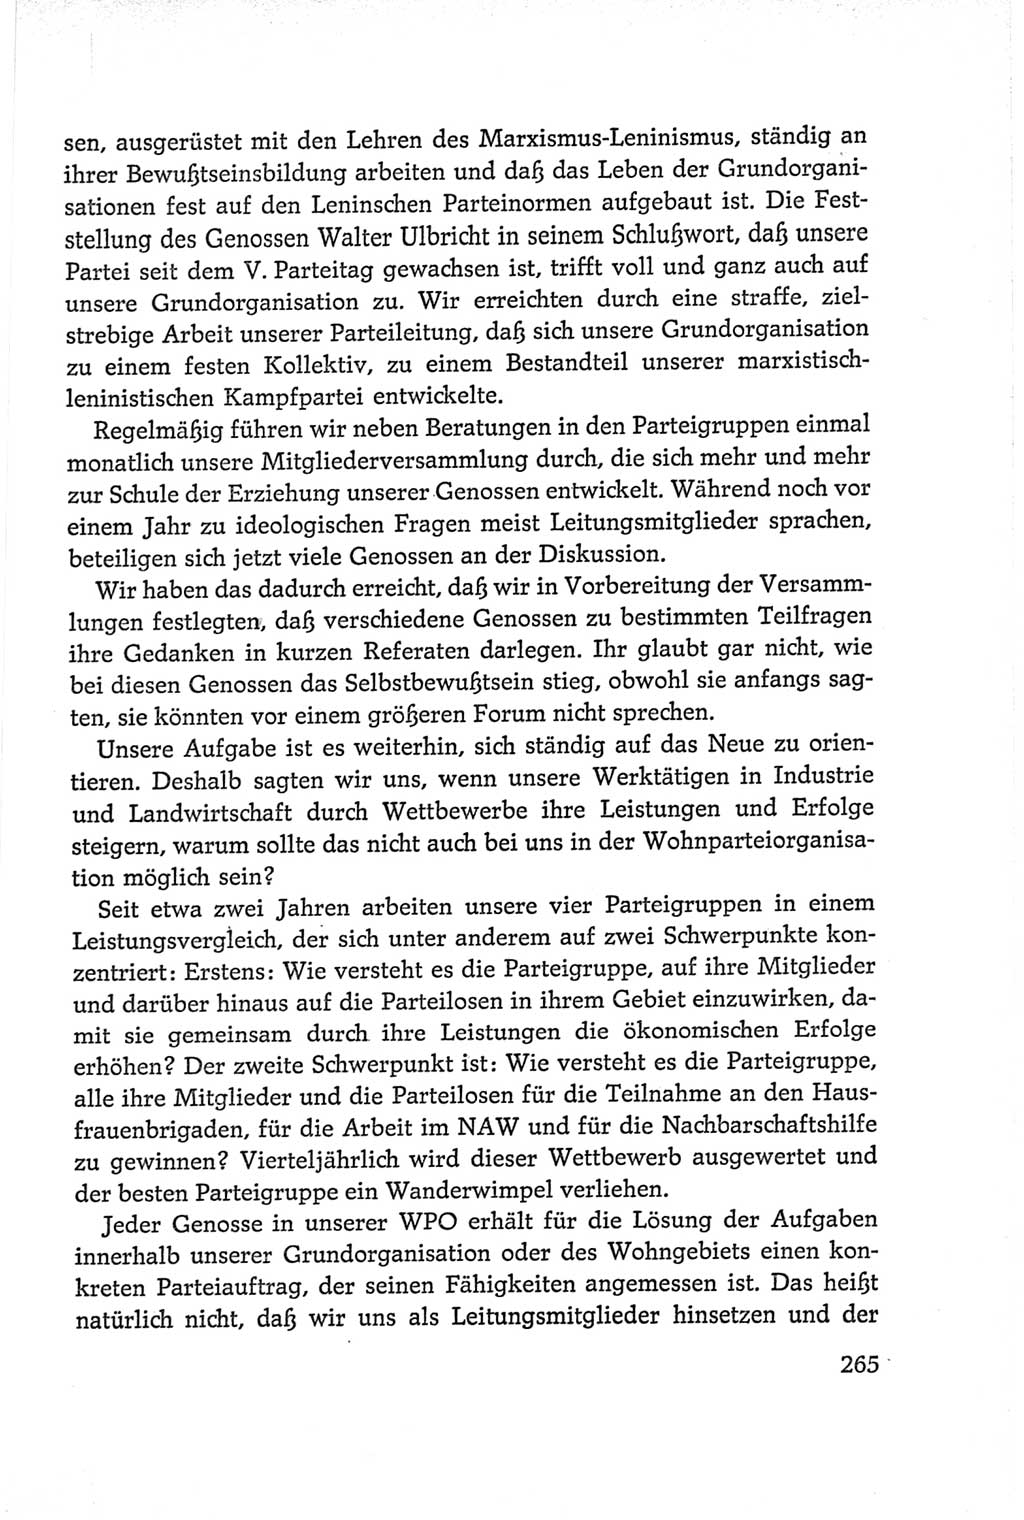 Protokoll der Verhandlungen des Ⅵ. Parteitages der Sozialistischen Einheitspartei Deutschlands (SED) [Deutsche Demokratische Republik (DDR)] 1963, Band Ⅱ, Seite 265 (Prot. Verh. Ⅵ. PT SED DDR 1963, Bd. Ⅱ, S. 265)